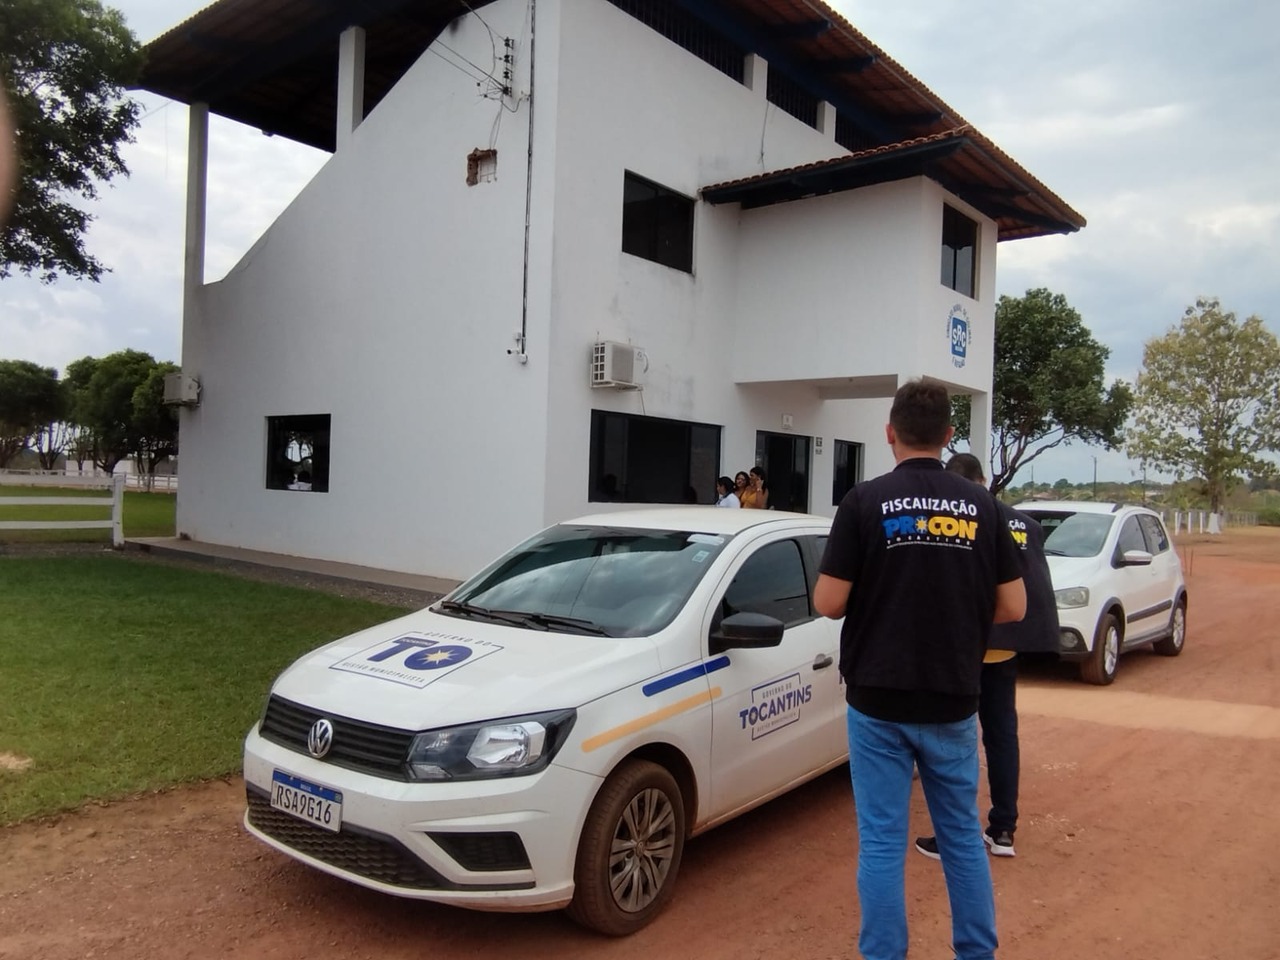 Procon Tocantins notifica Sindicato Rural para que realize a venda imediata de meia-entrada da 24ª EXPOCOLINAS